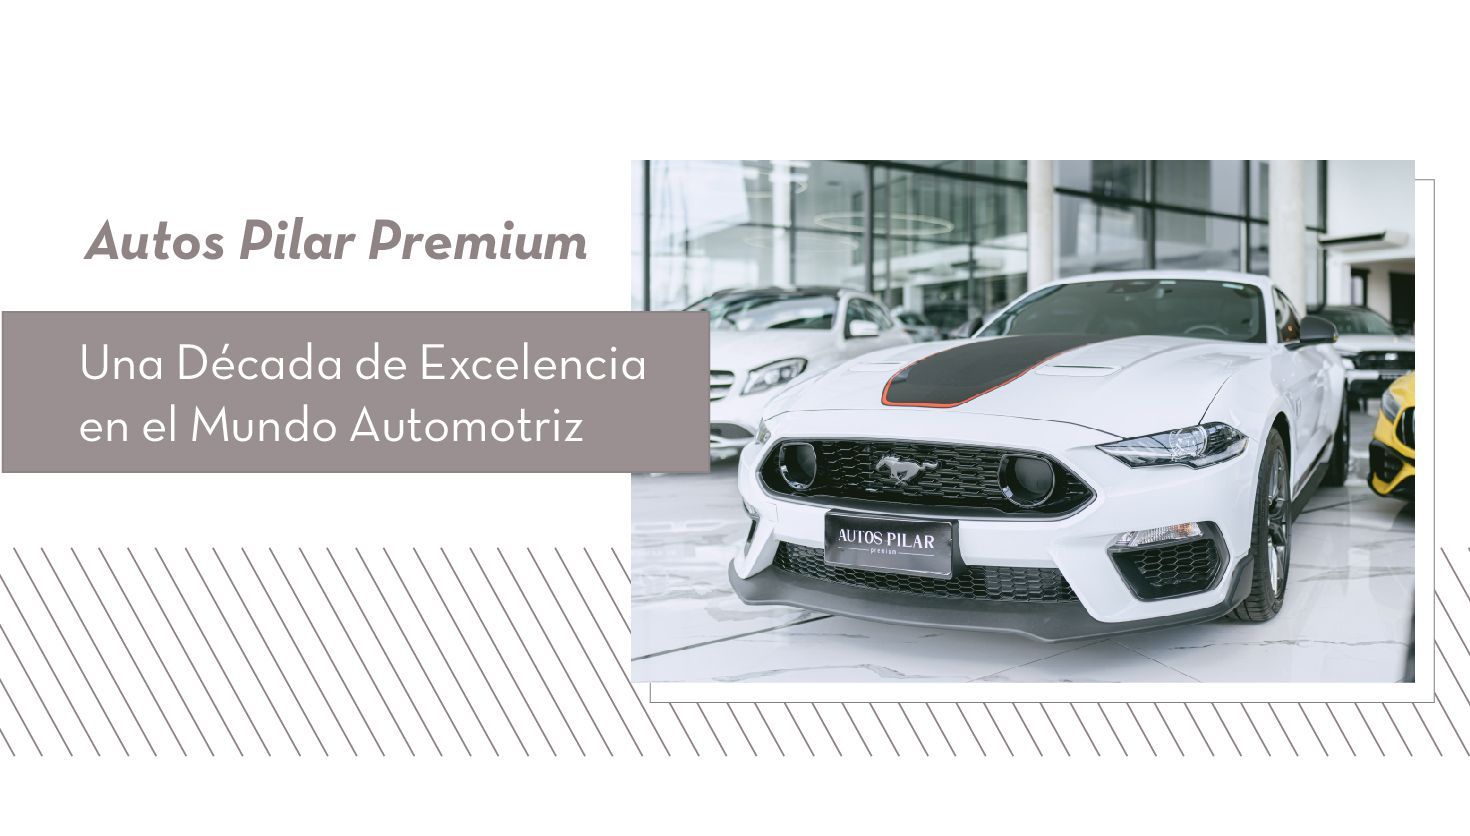 Autos Pilar Premium: Una década de excelencia en el mundo automotriz